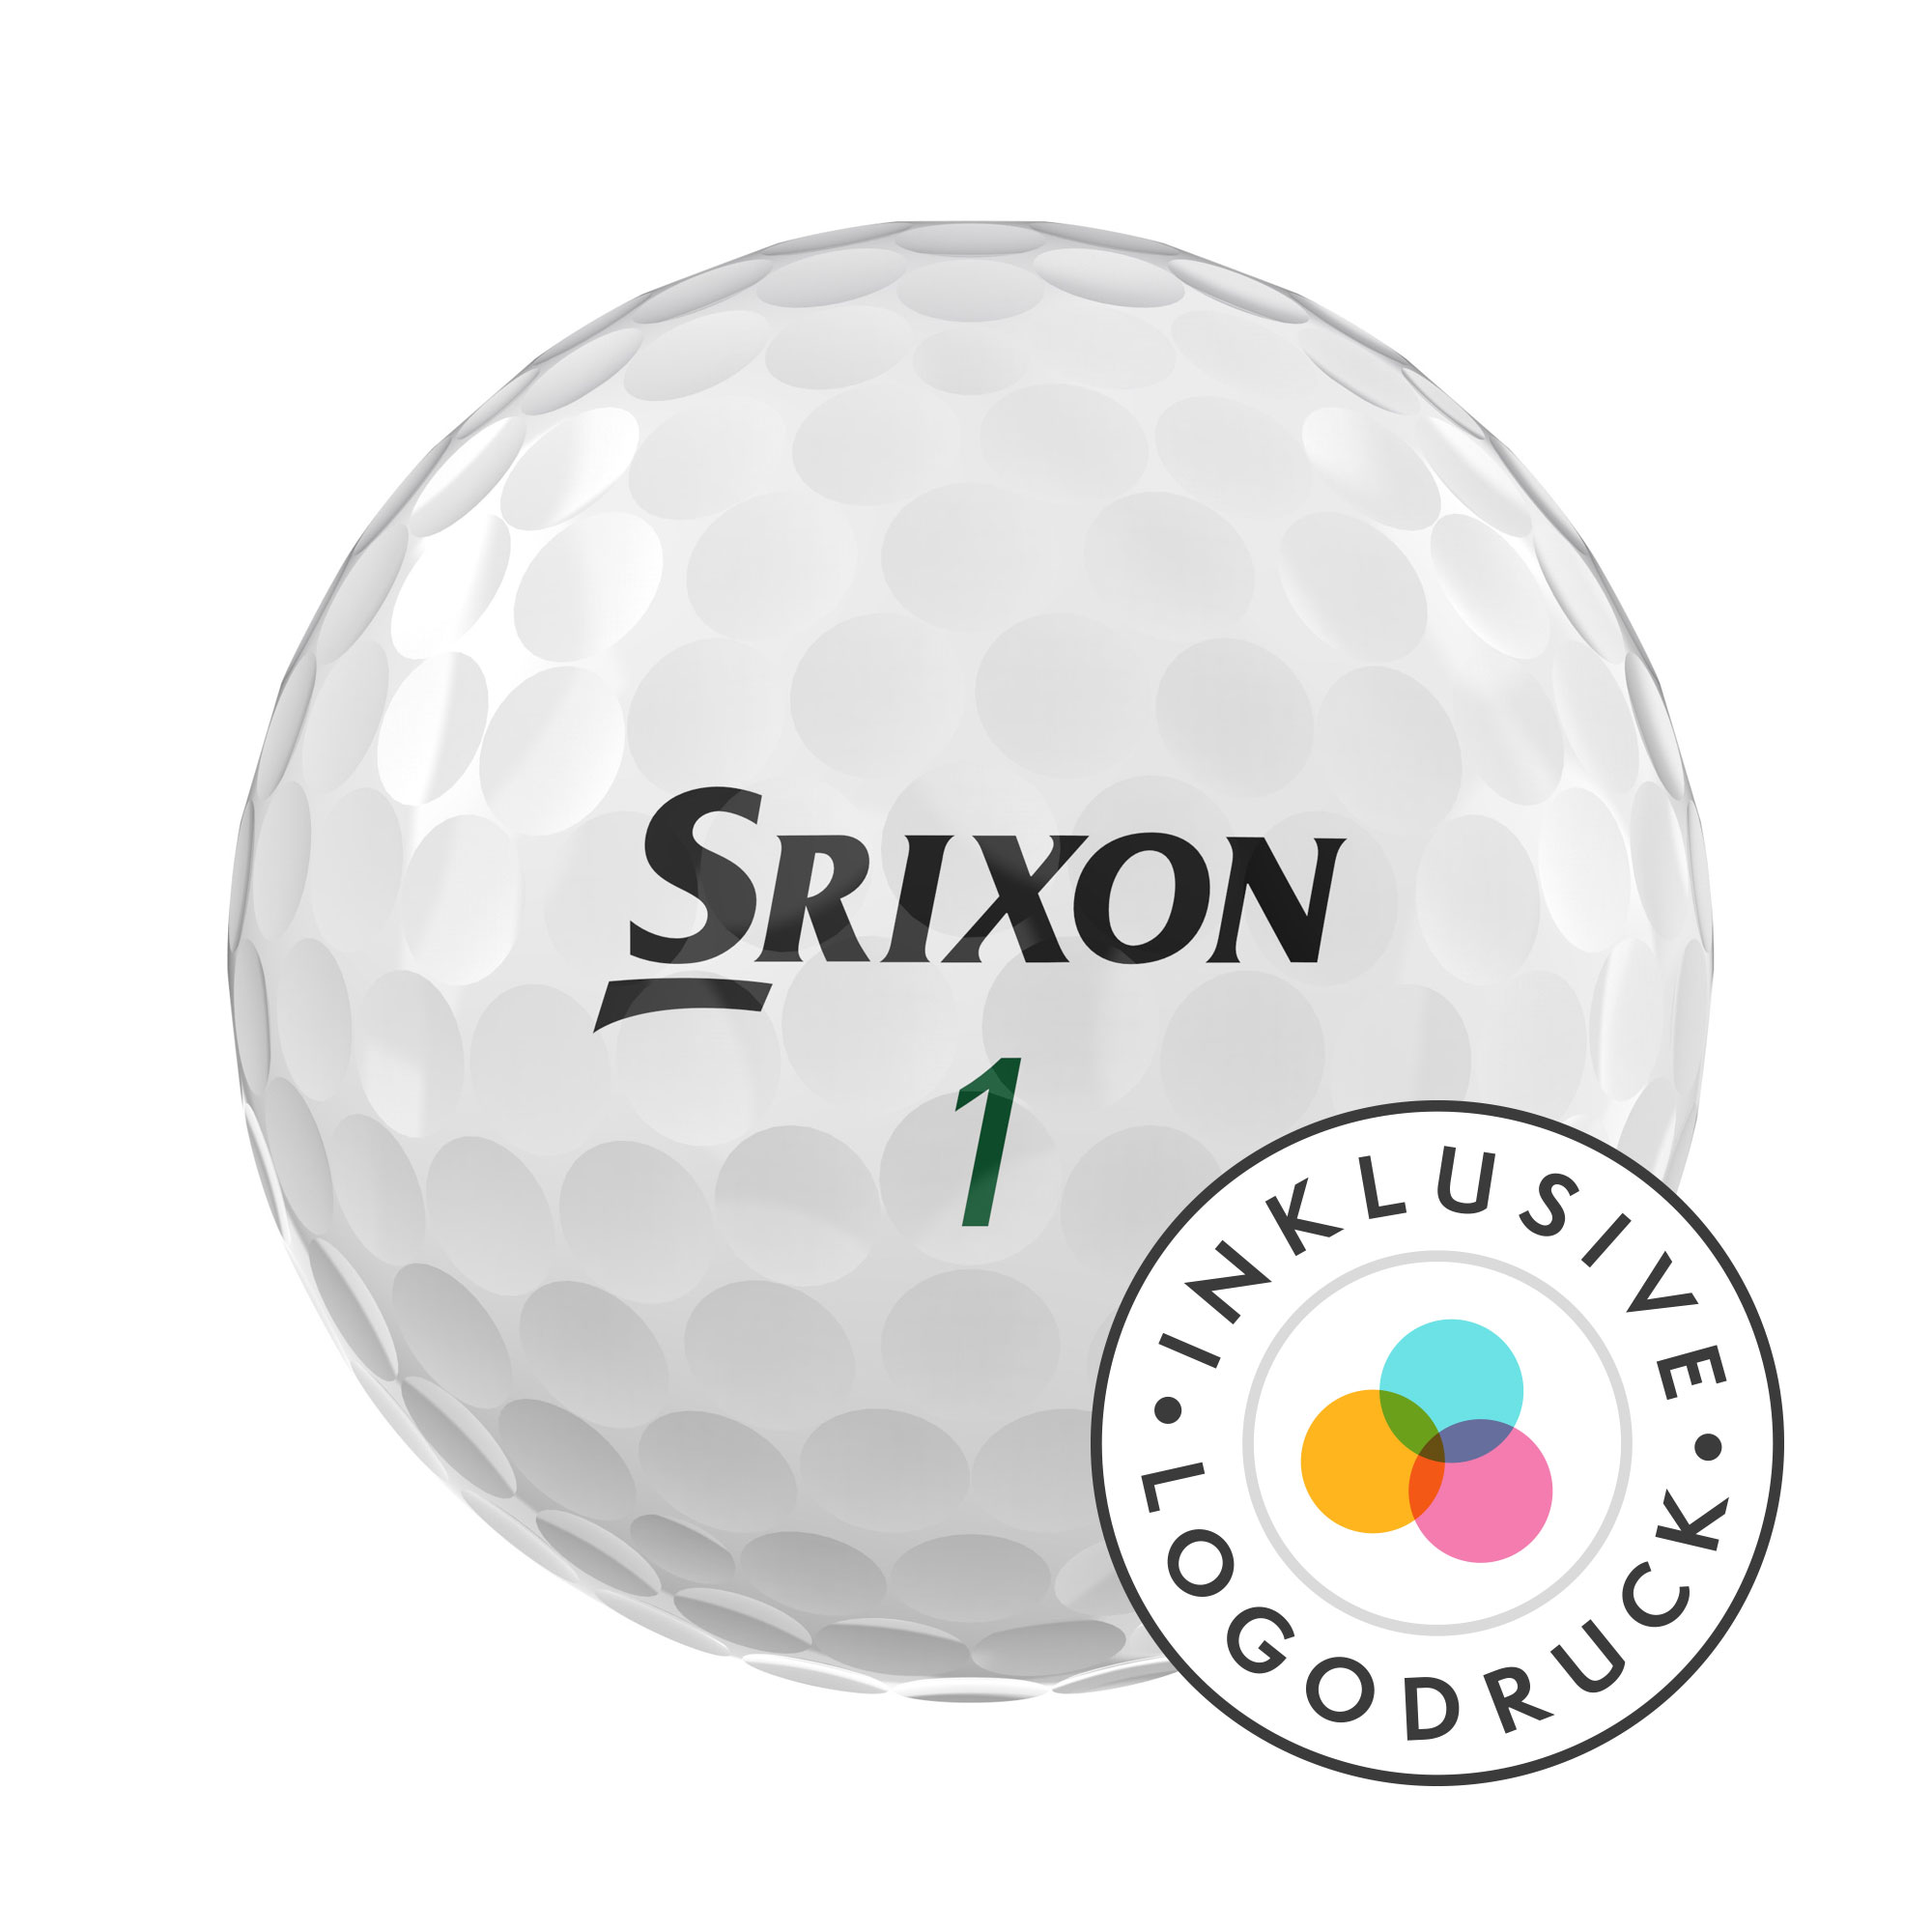 Srixon Soft Feel Golfbälle bedruckt, weiss (VPE à 12 Bälle)